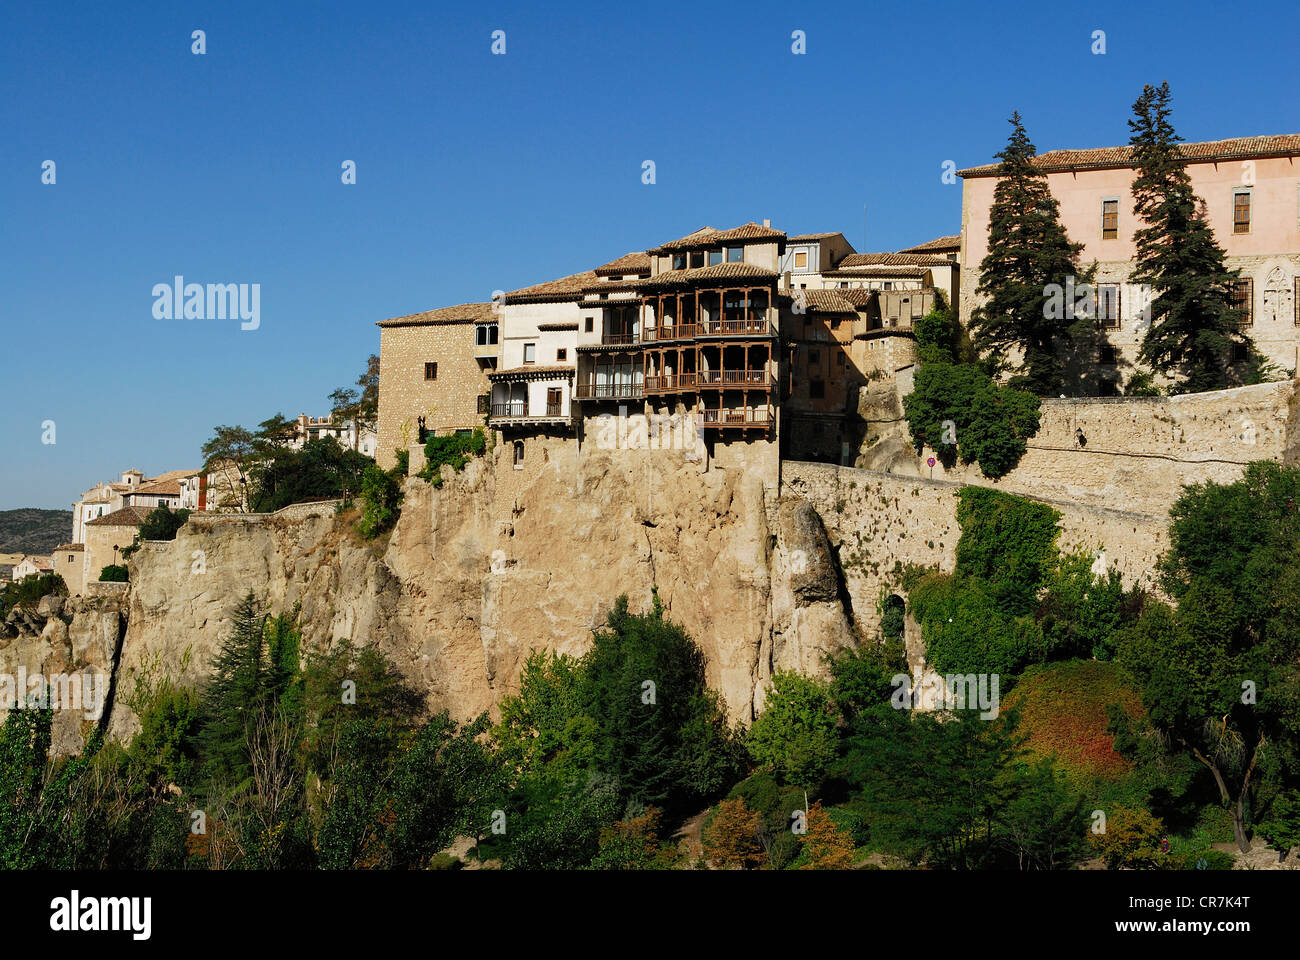 Spagna, Castilla la Mancha, Cuenca, città storica fortificata Patrimonio Mondiale dell'UNESCO, il centro storico e le case sospese, il Casas Foto Stock